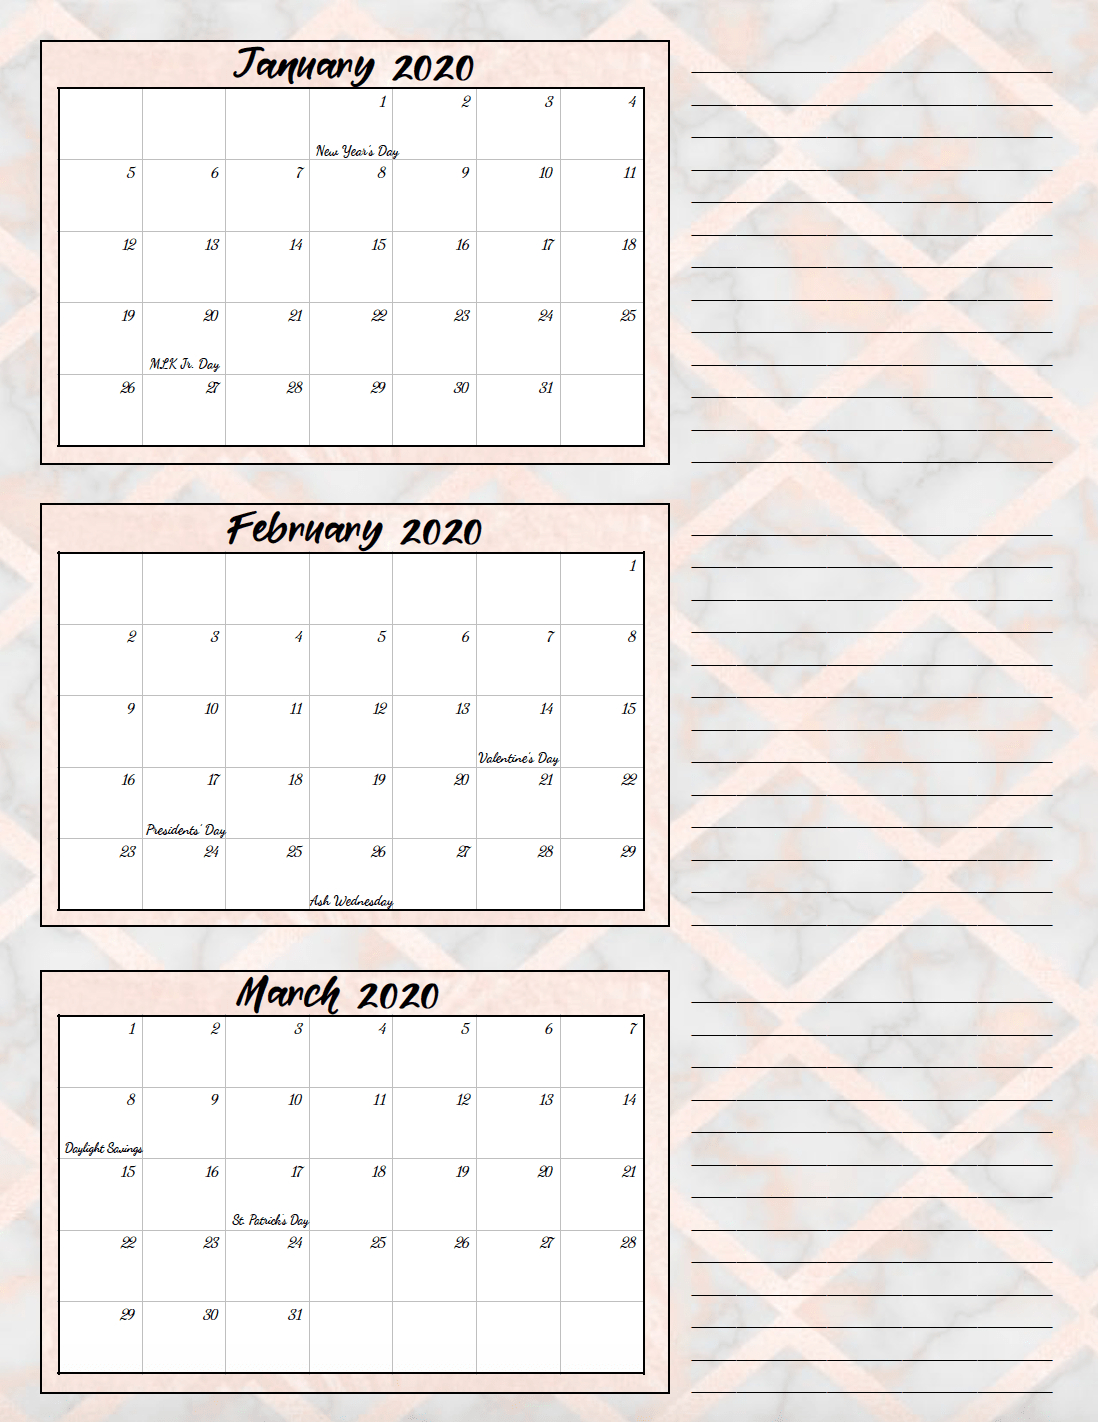 Free Printable Quarterly Calendar 2020 - Colona.rsd7